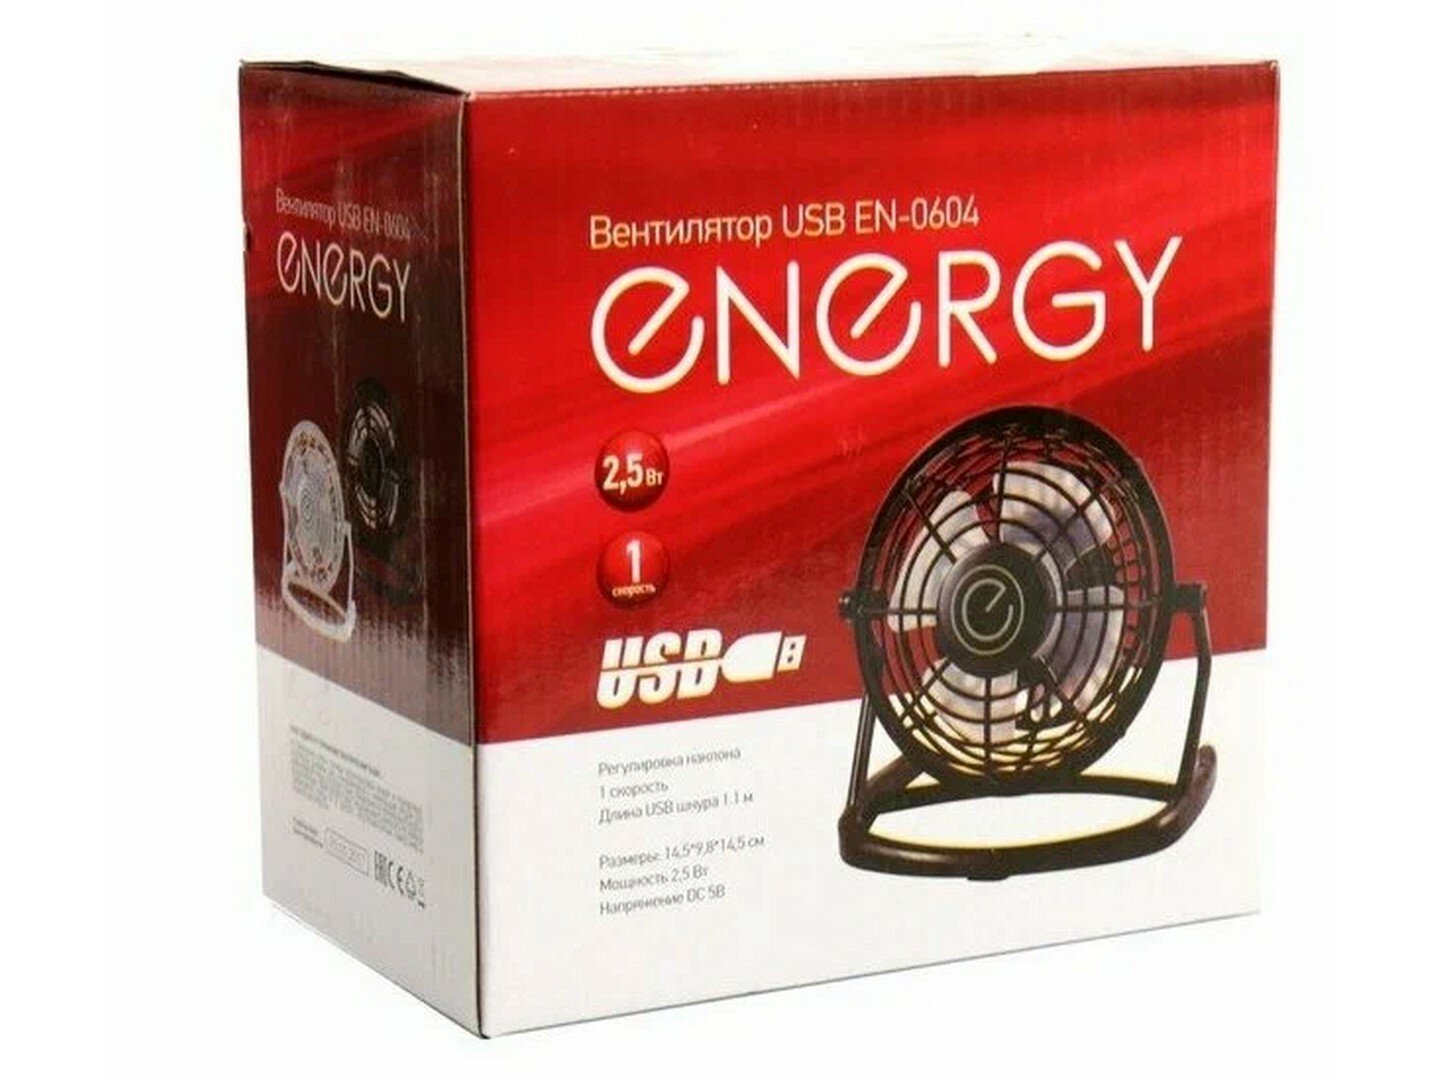 Вентилятор бытовой ENERGY EN-0604 USB (настольный) черный, 1шт